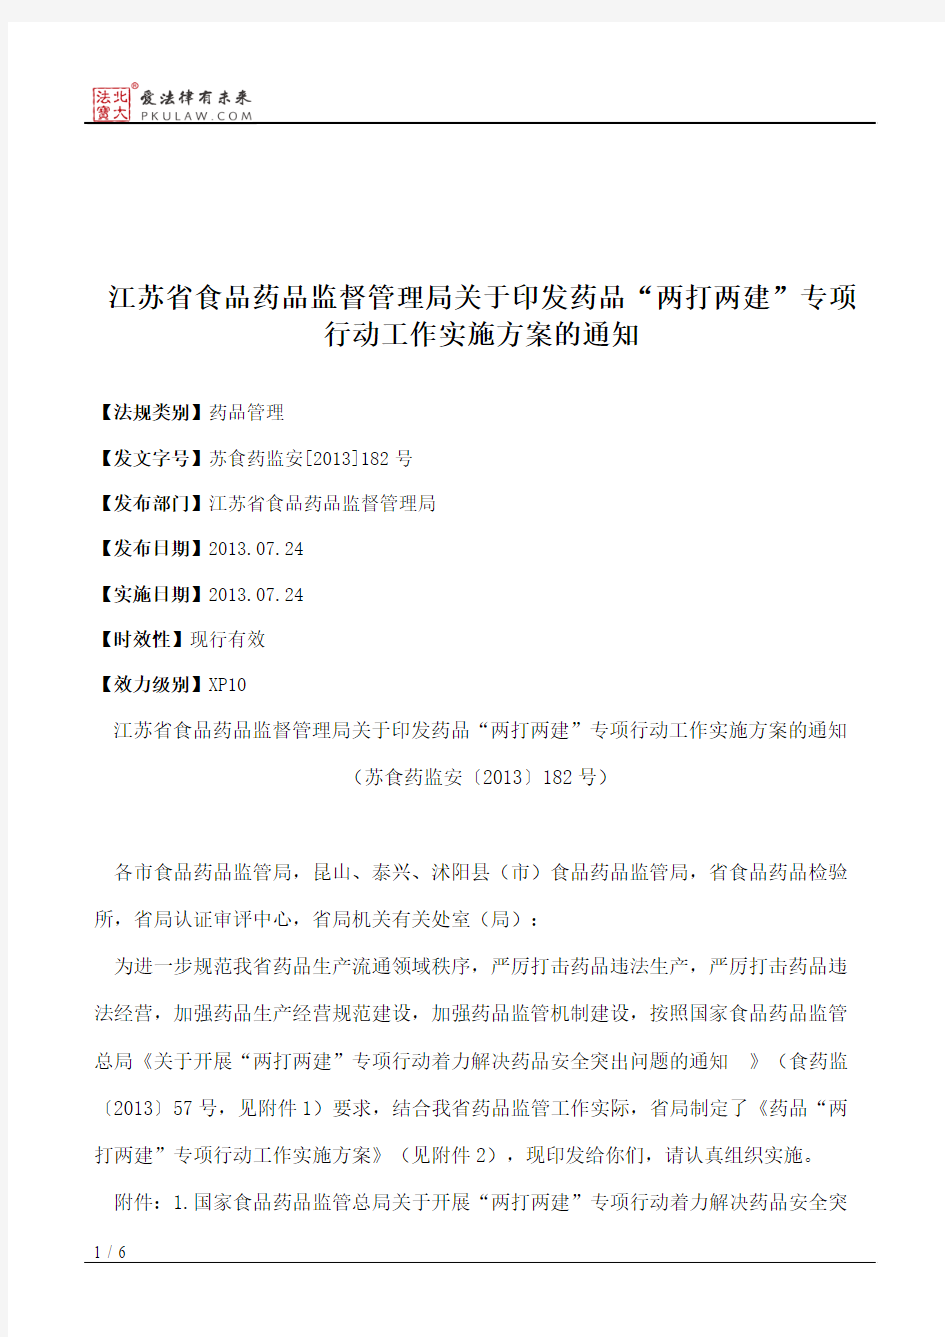 江苏省食品药品监督管理局关于印发药品“两打两建”专项行动工作